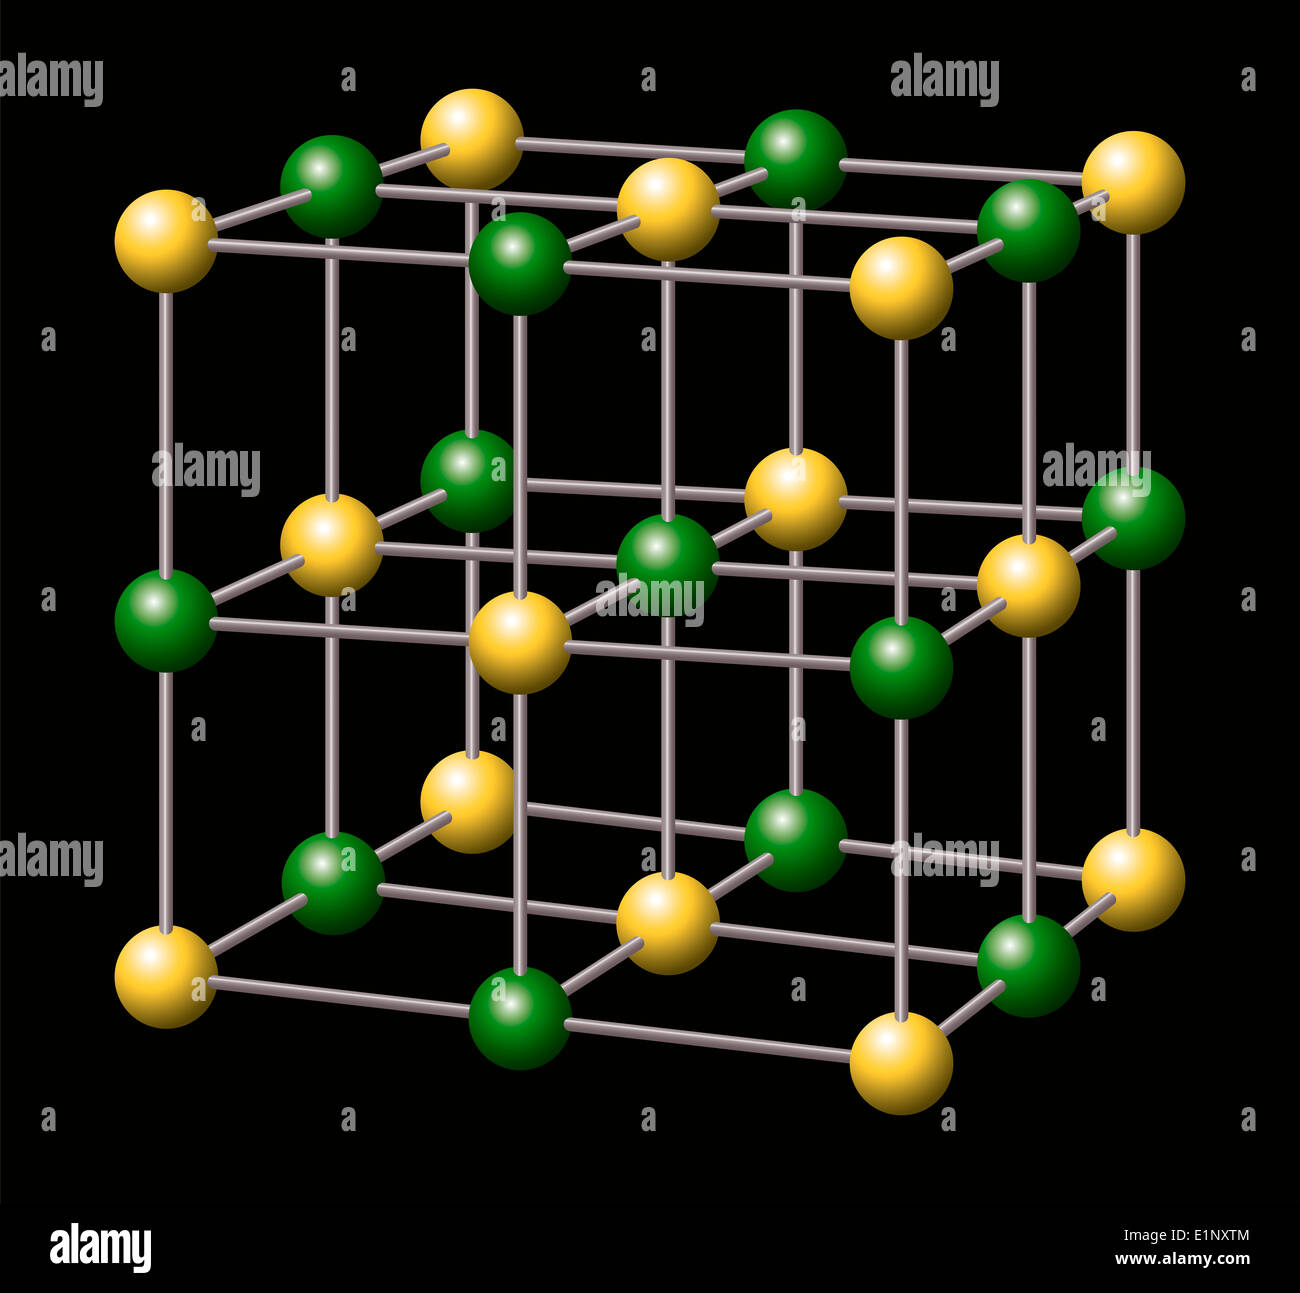 Natrium-Chlorid - NaCl - Salz - Natrium und Chlorid-Ionen bilden dreidimensionale kubischen Kristallstruktur von Natrium-Chlorid Stockfoto